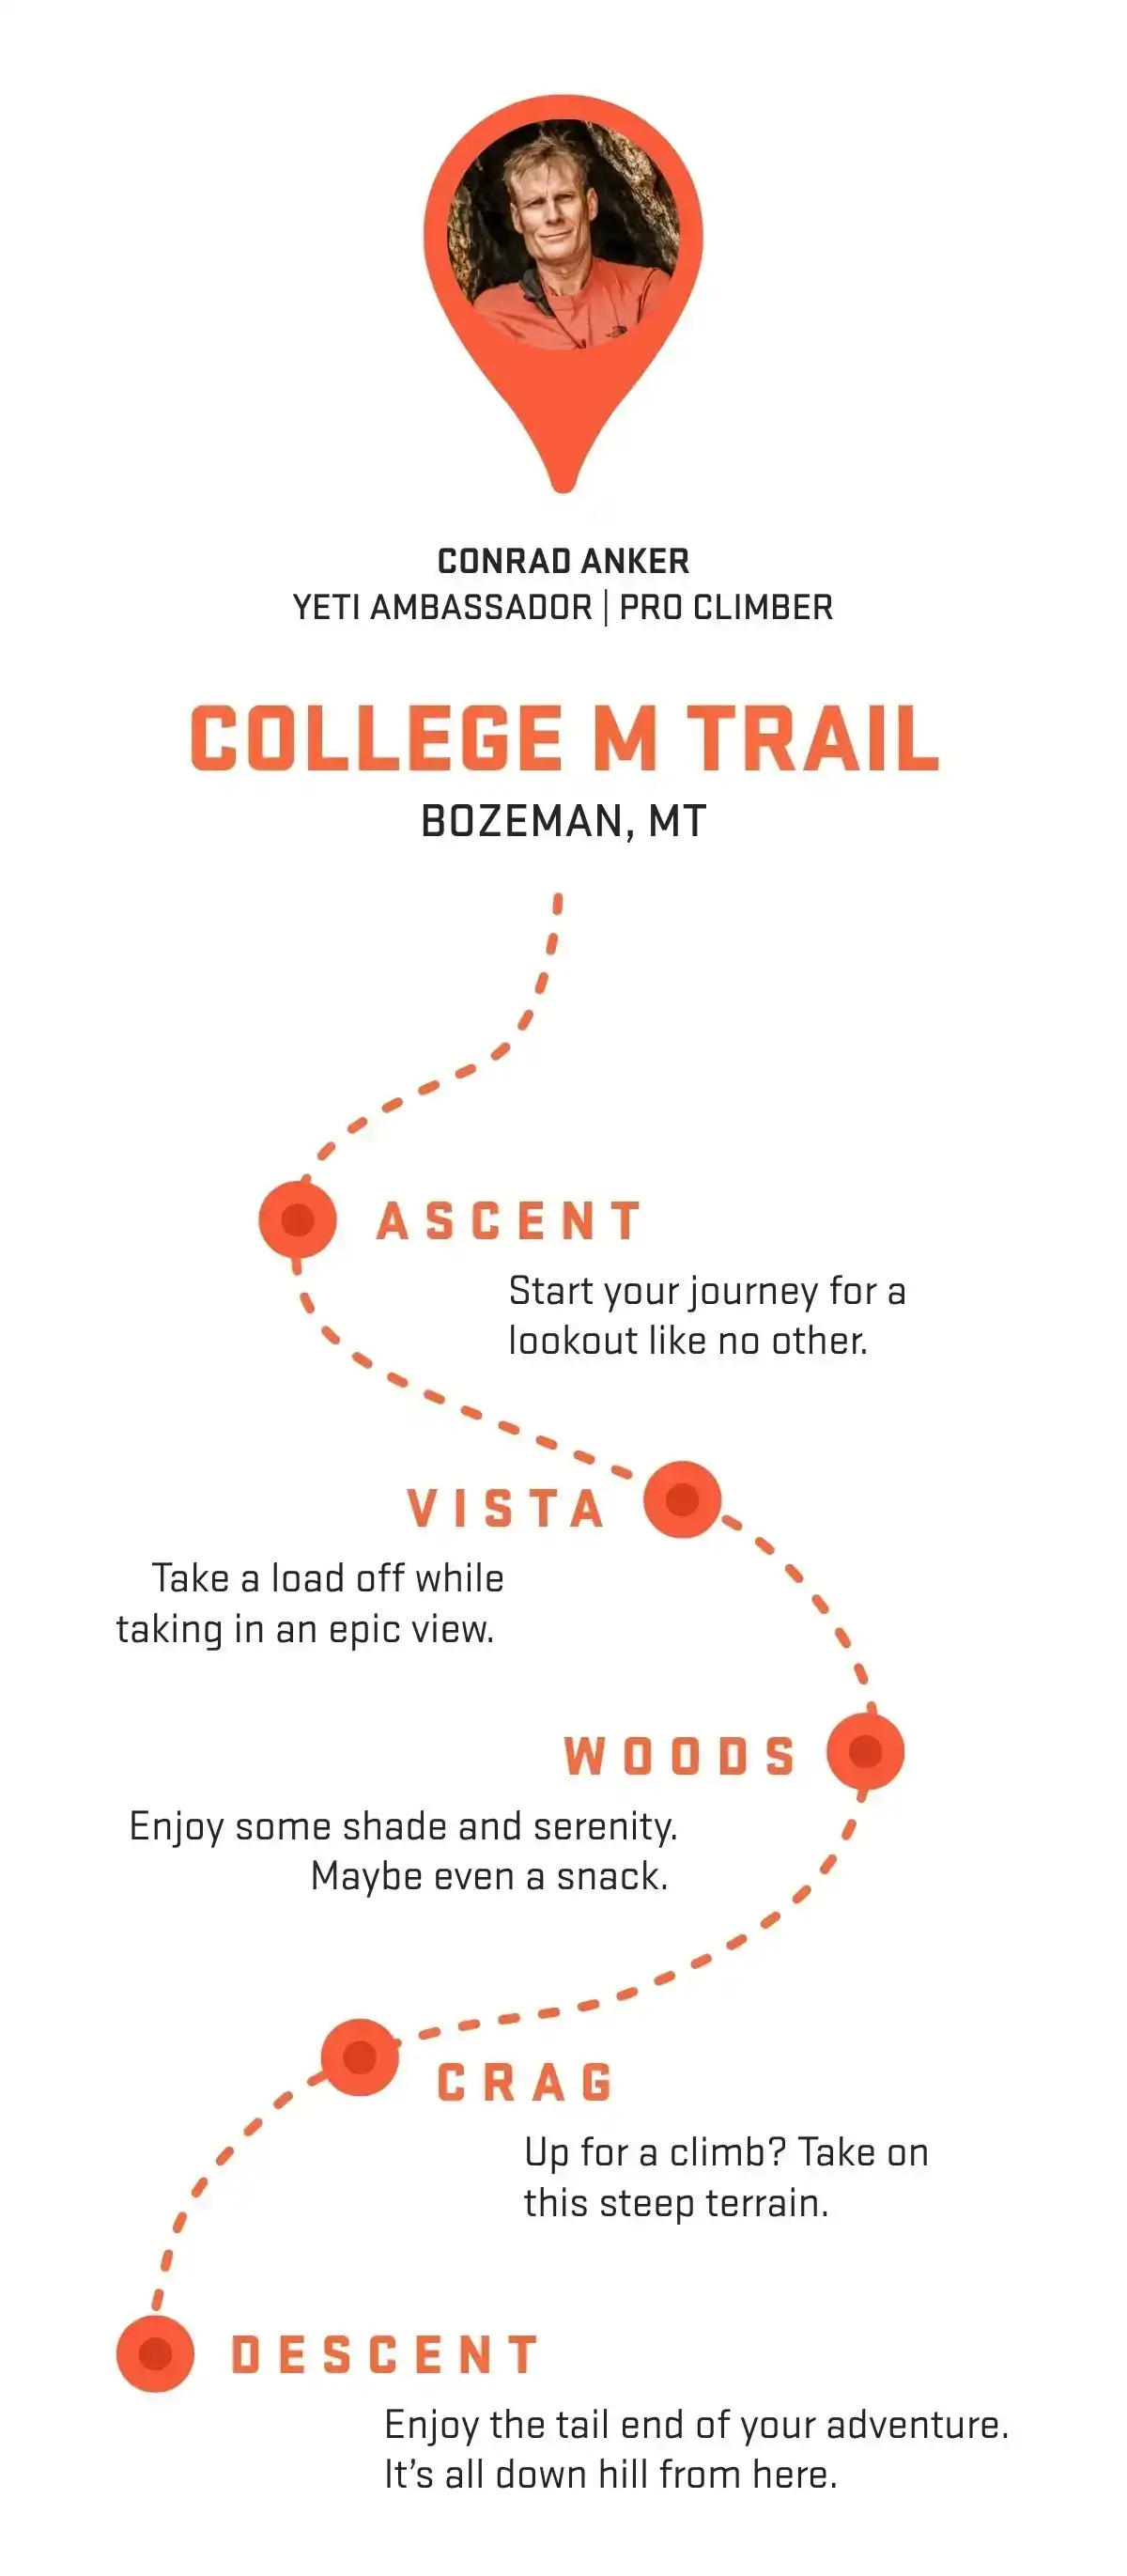 Explore College M Trail with Conrad Anker